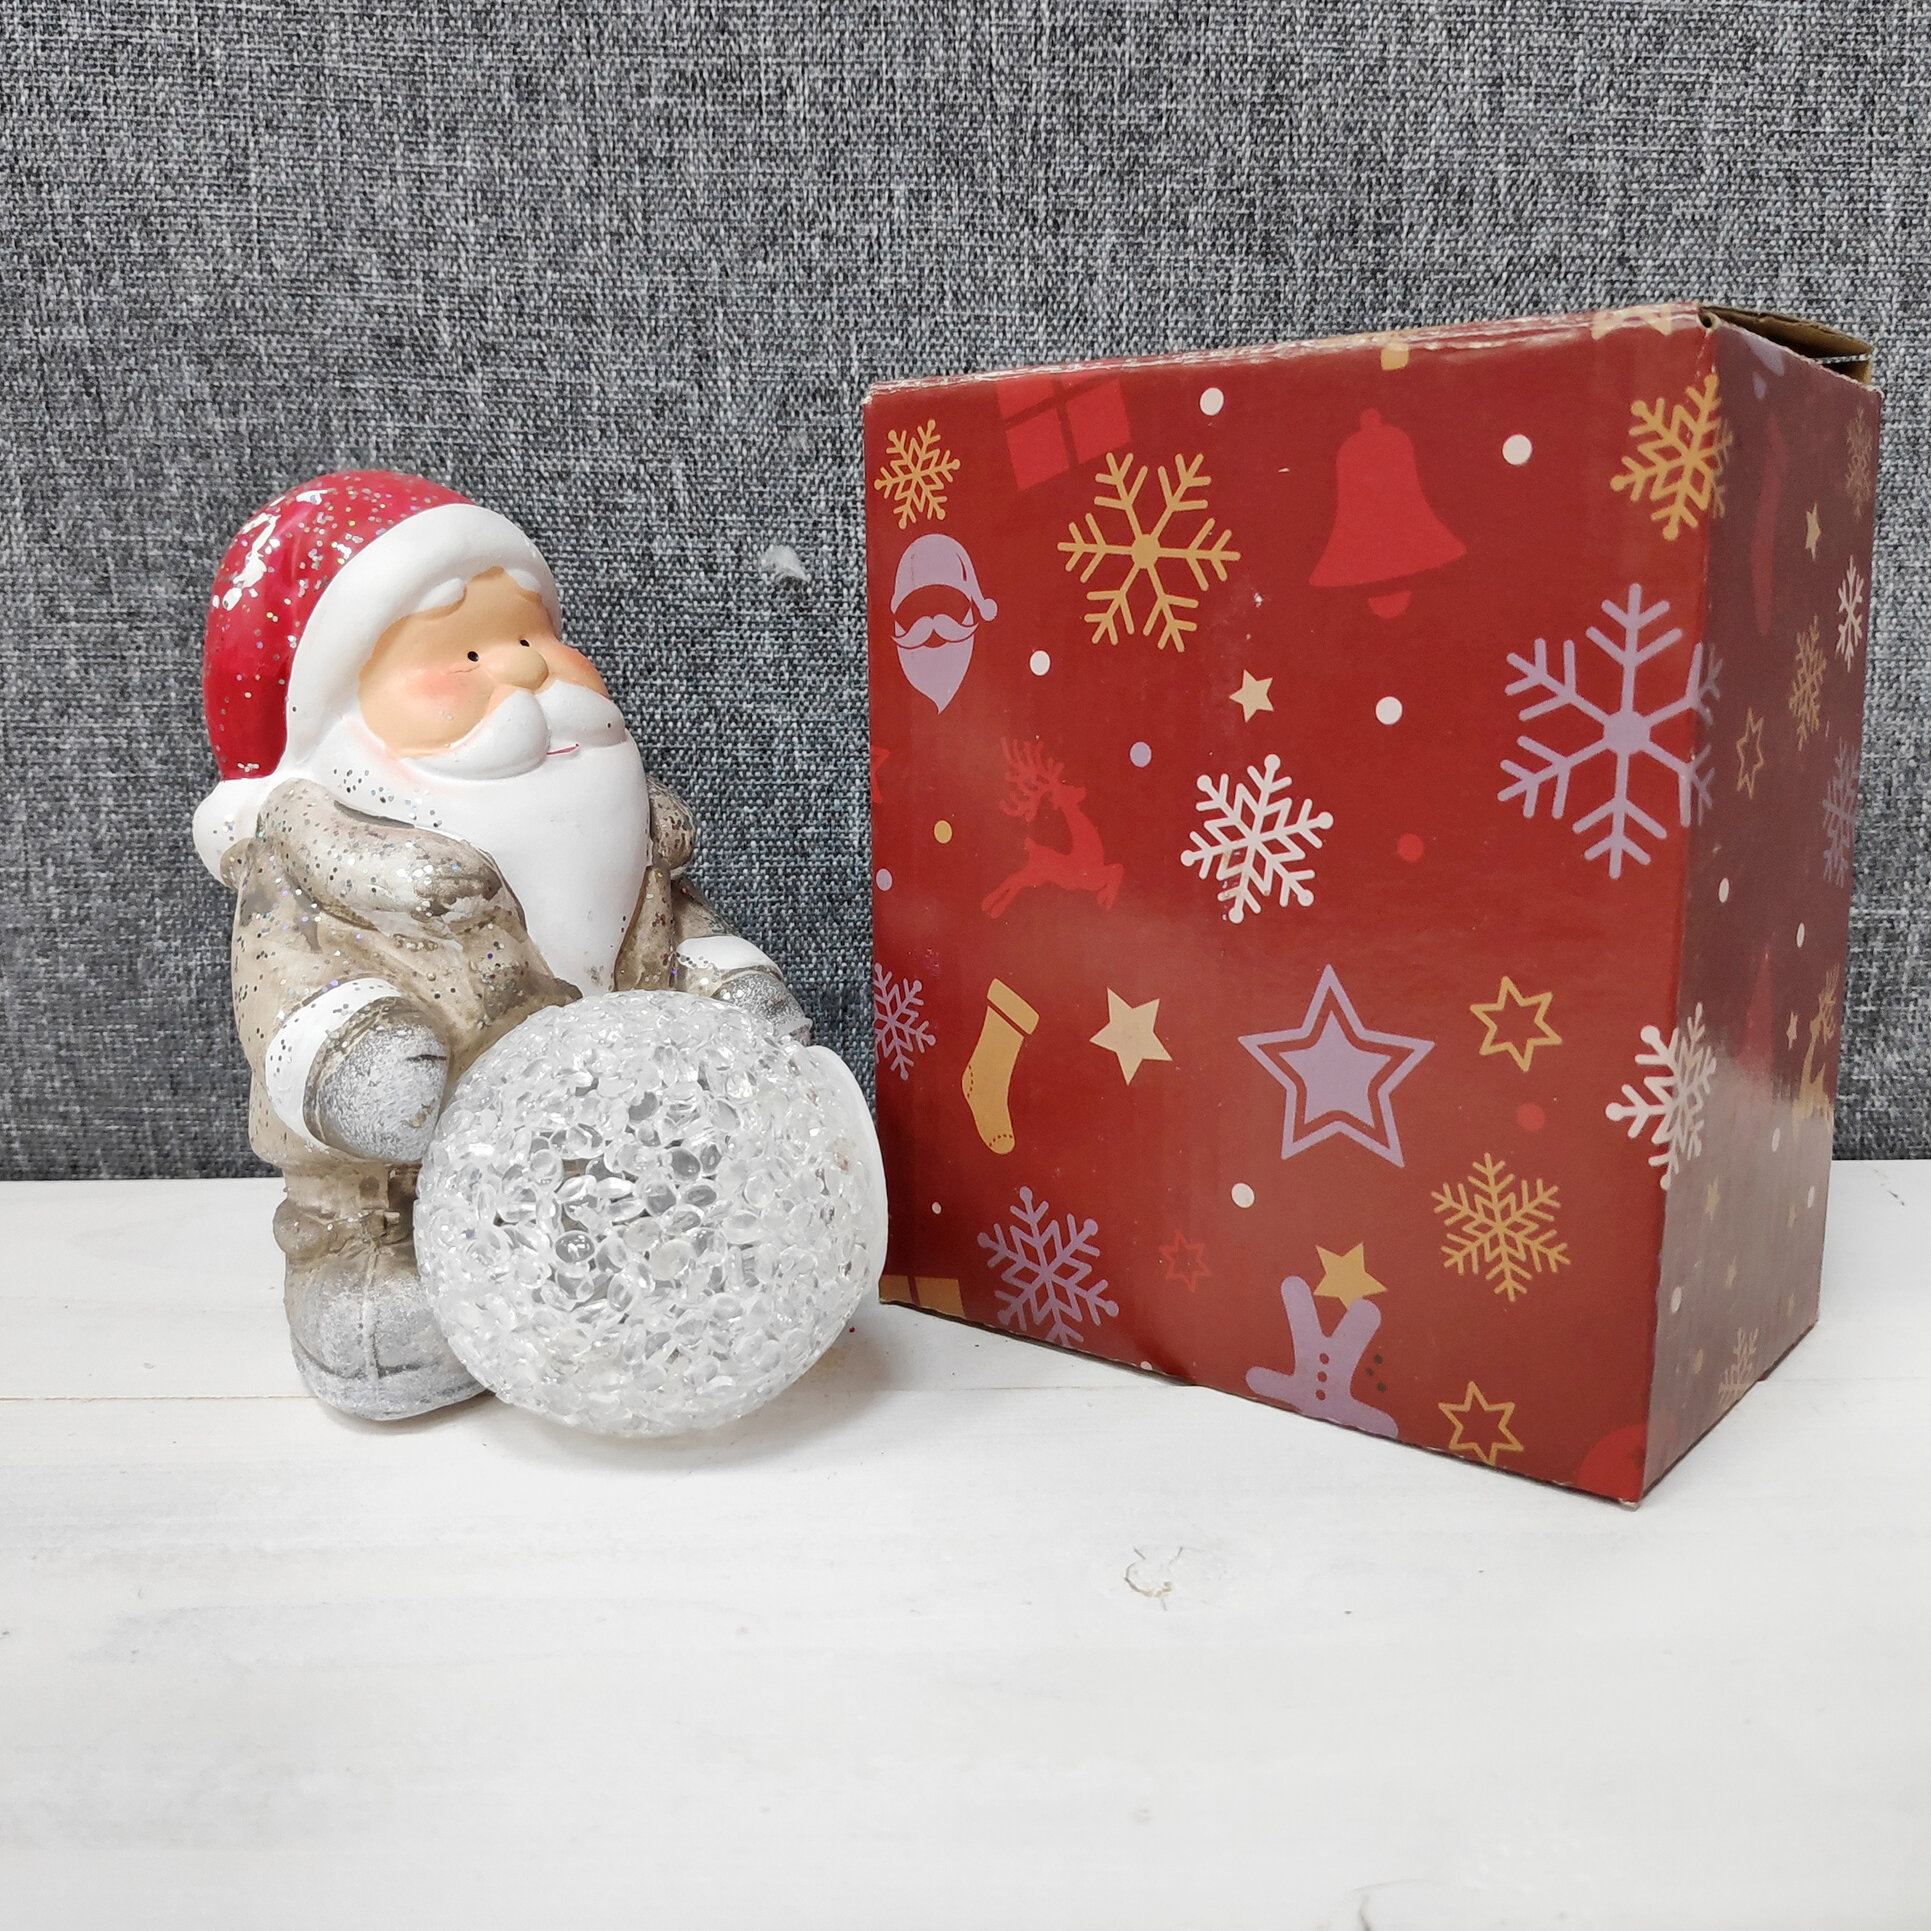 Сувенир новогодний Снежок, LED-подсветка, 9.6х13х7.2см, в ассортименте: Дед Мороз, Снеговик